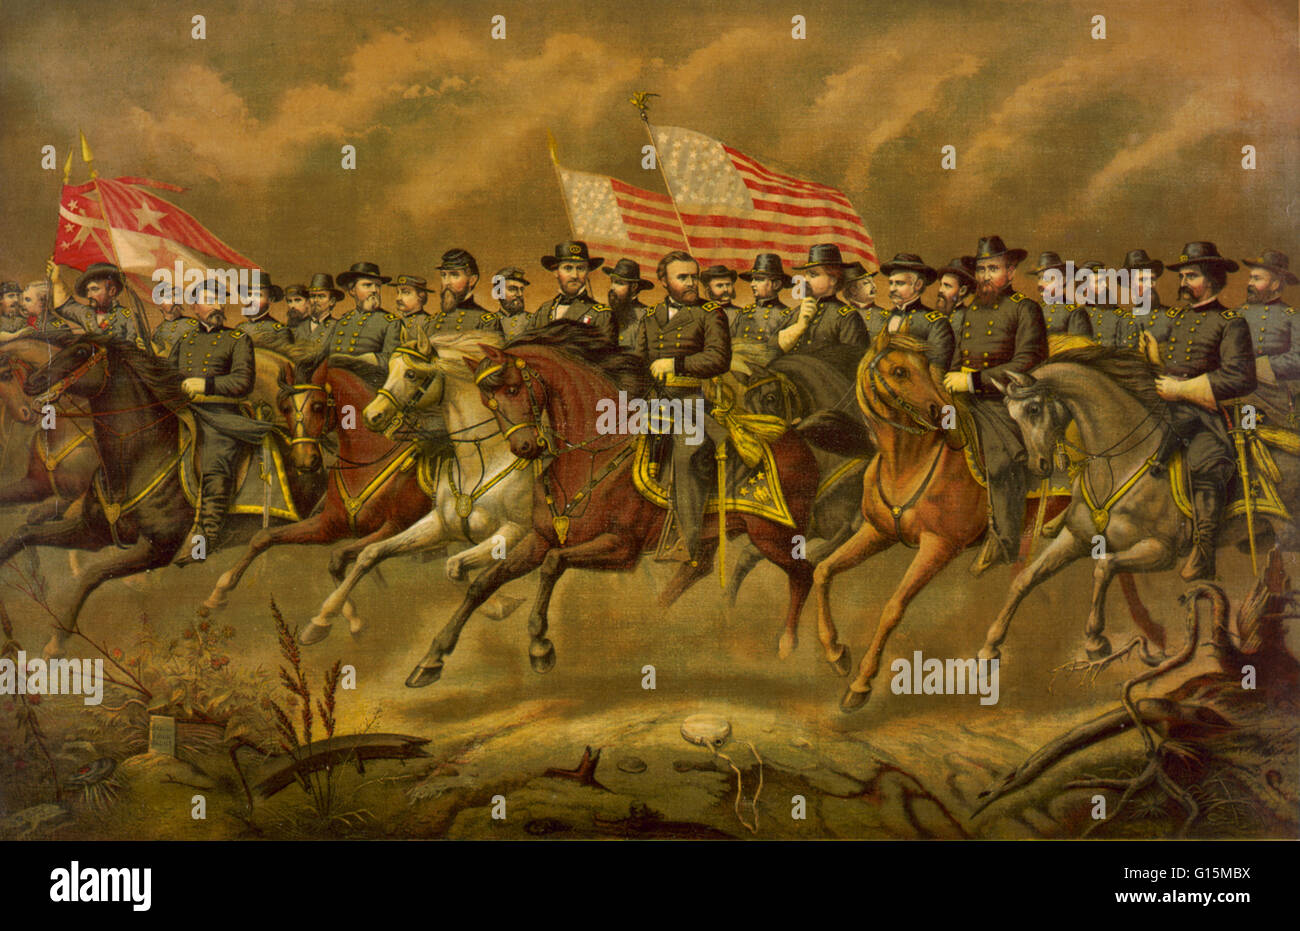 Farblitho zeigt Grant und seine Generäle auf dem Pferderücken. Ulysses S. Grant (geboren Hiram Ulysses Grant; 27. April 1822 - 23. Juli 1885) war der 18. Präsident der Vereinigten Staaten. Ein Berufssoldat, absolvierte er die United States Military Academy in Stockfoto